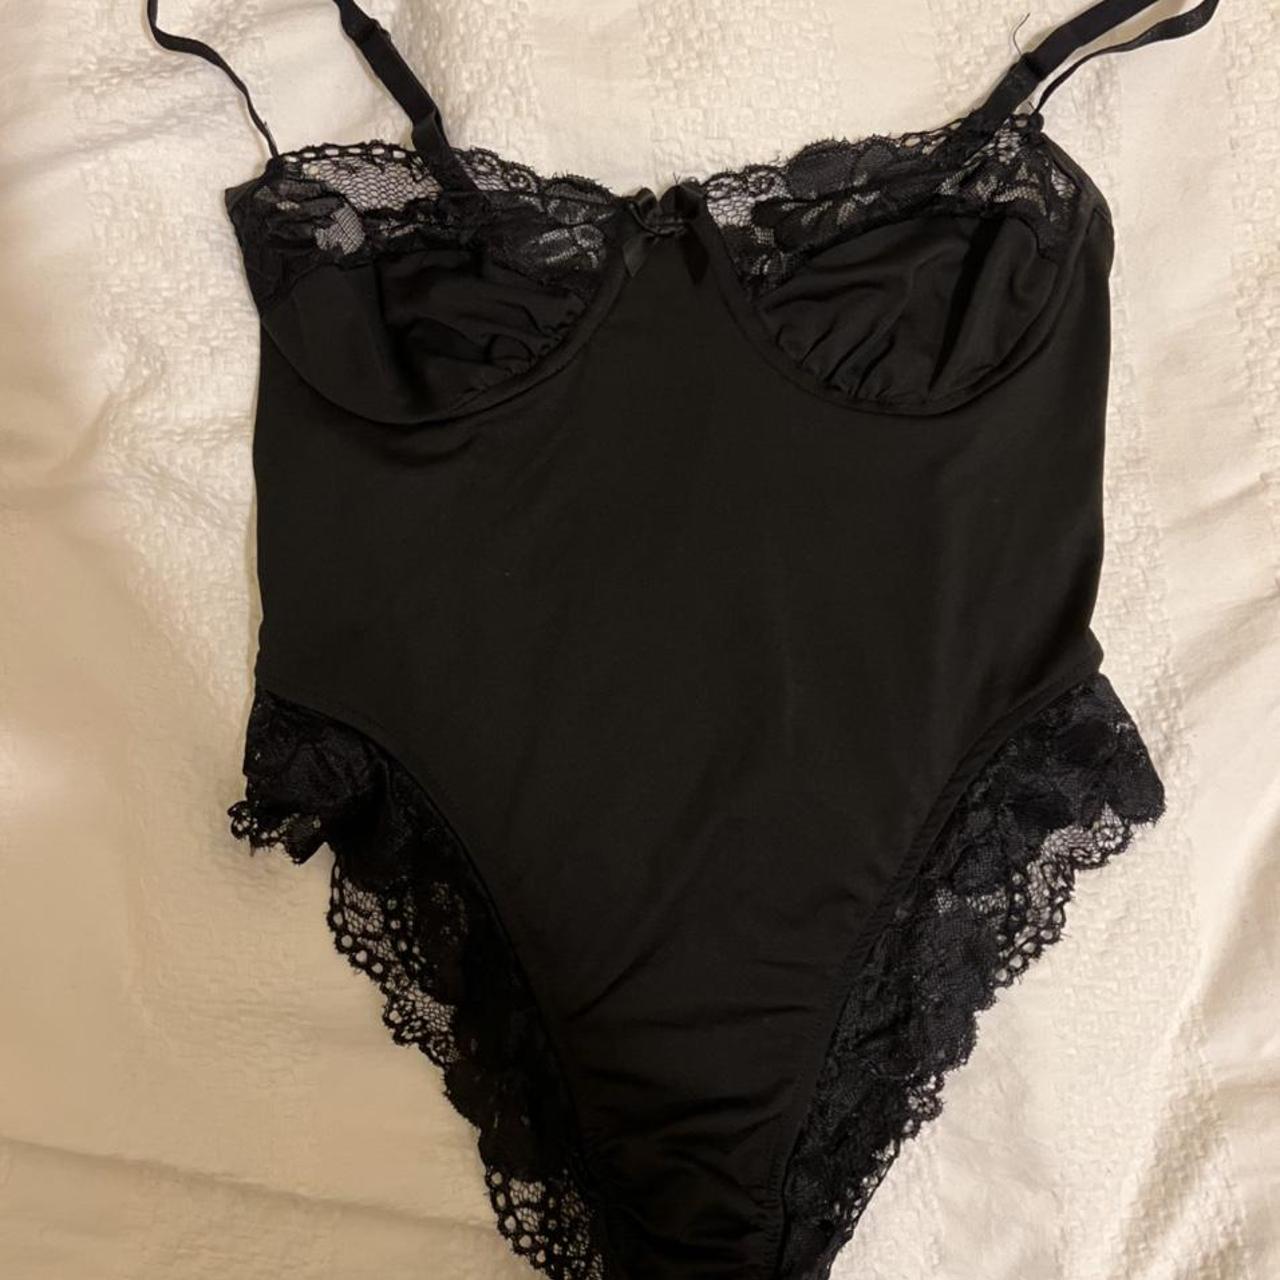 Lace black lingerie/bodysuit! Super cute with a pair... - Depop